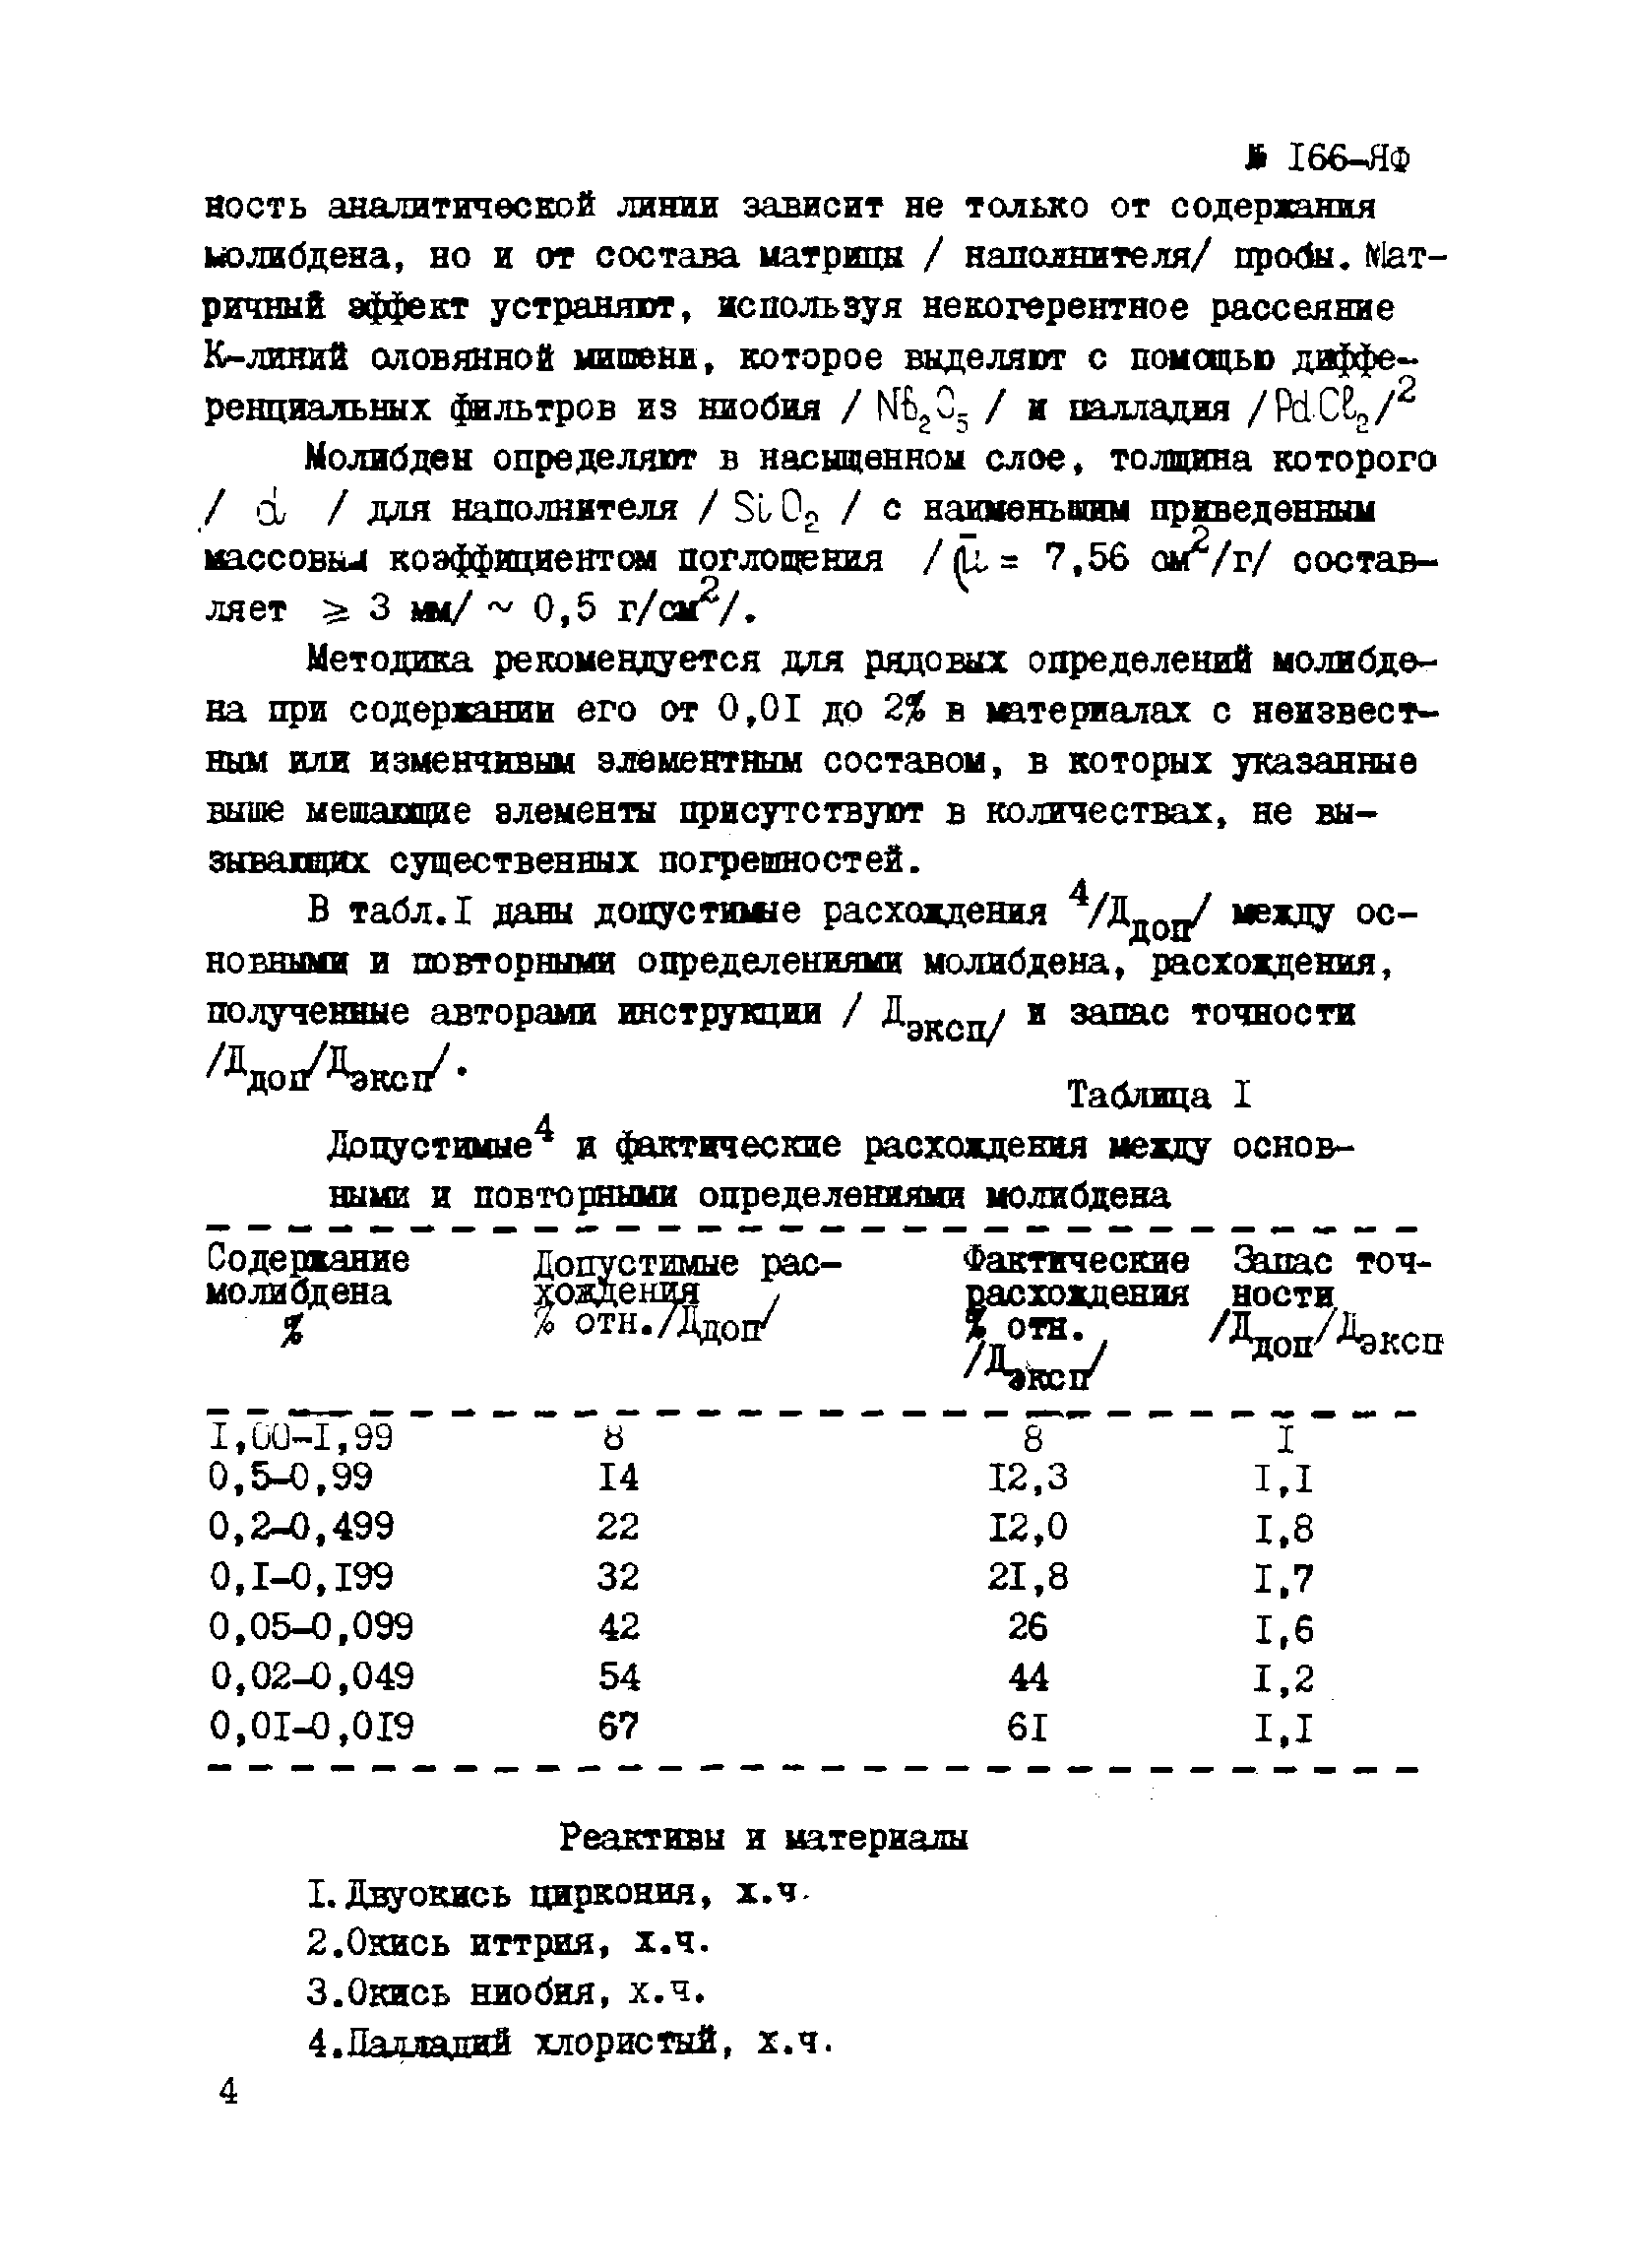 Инструкция НСАМ 166-ЯФ